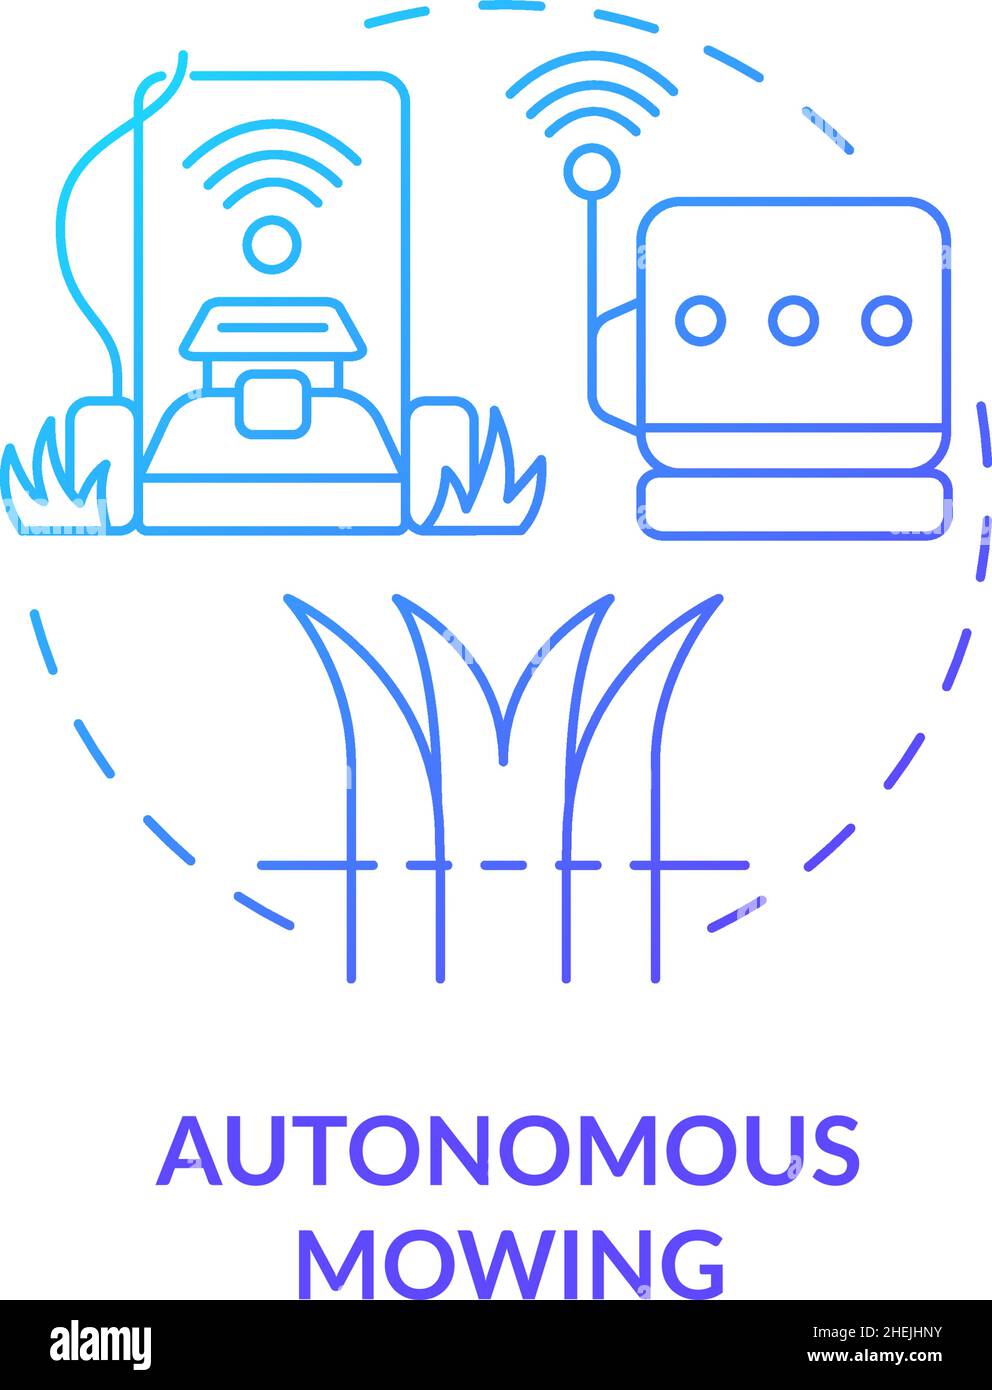 Autonomous mowing blue gradient concept icon Stock Vector